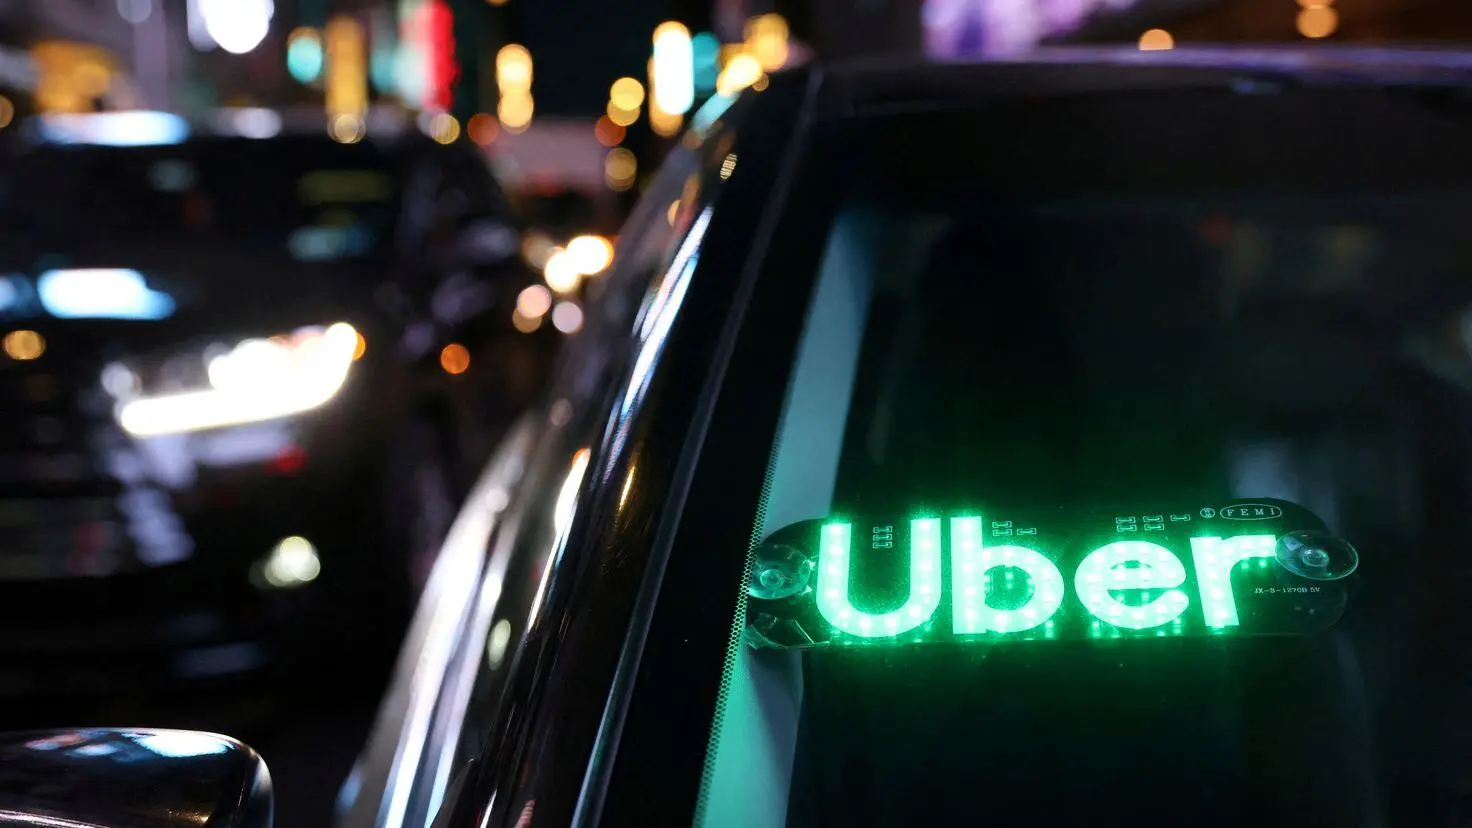 cabify acaba con sector taxi eeuu - Qué es un Uber en Estados Unidos